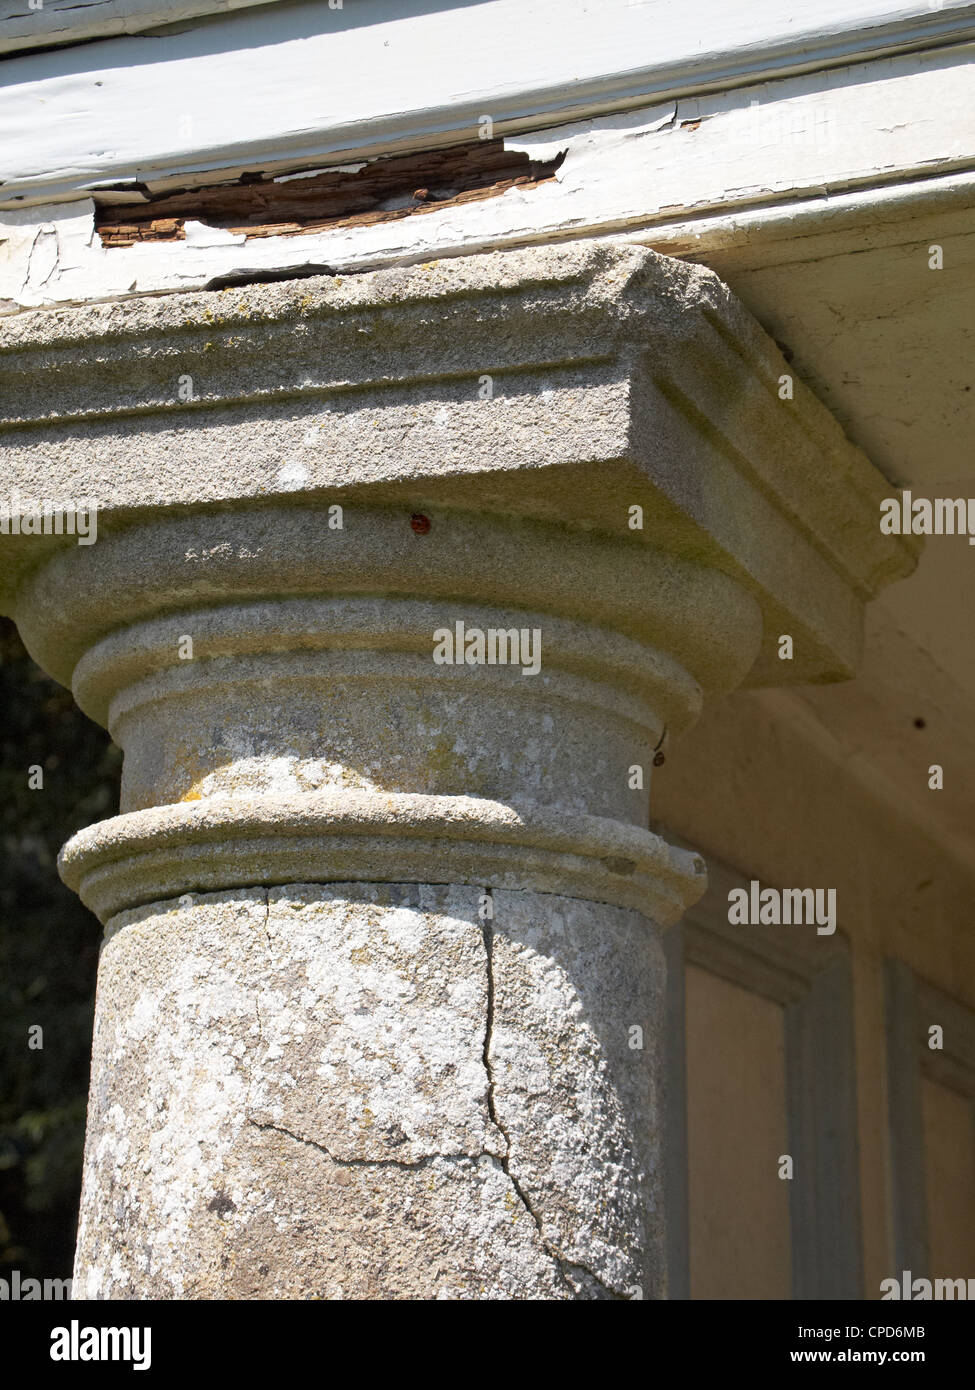 Pourriture humide dans un linteau en bois et les dégâts de gel (fissures) dans une colonne de pierre à l'appui d'un jardin de style classique. Banque D'Images